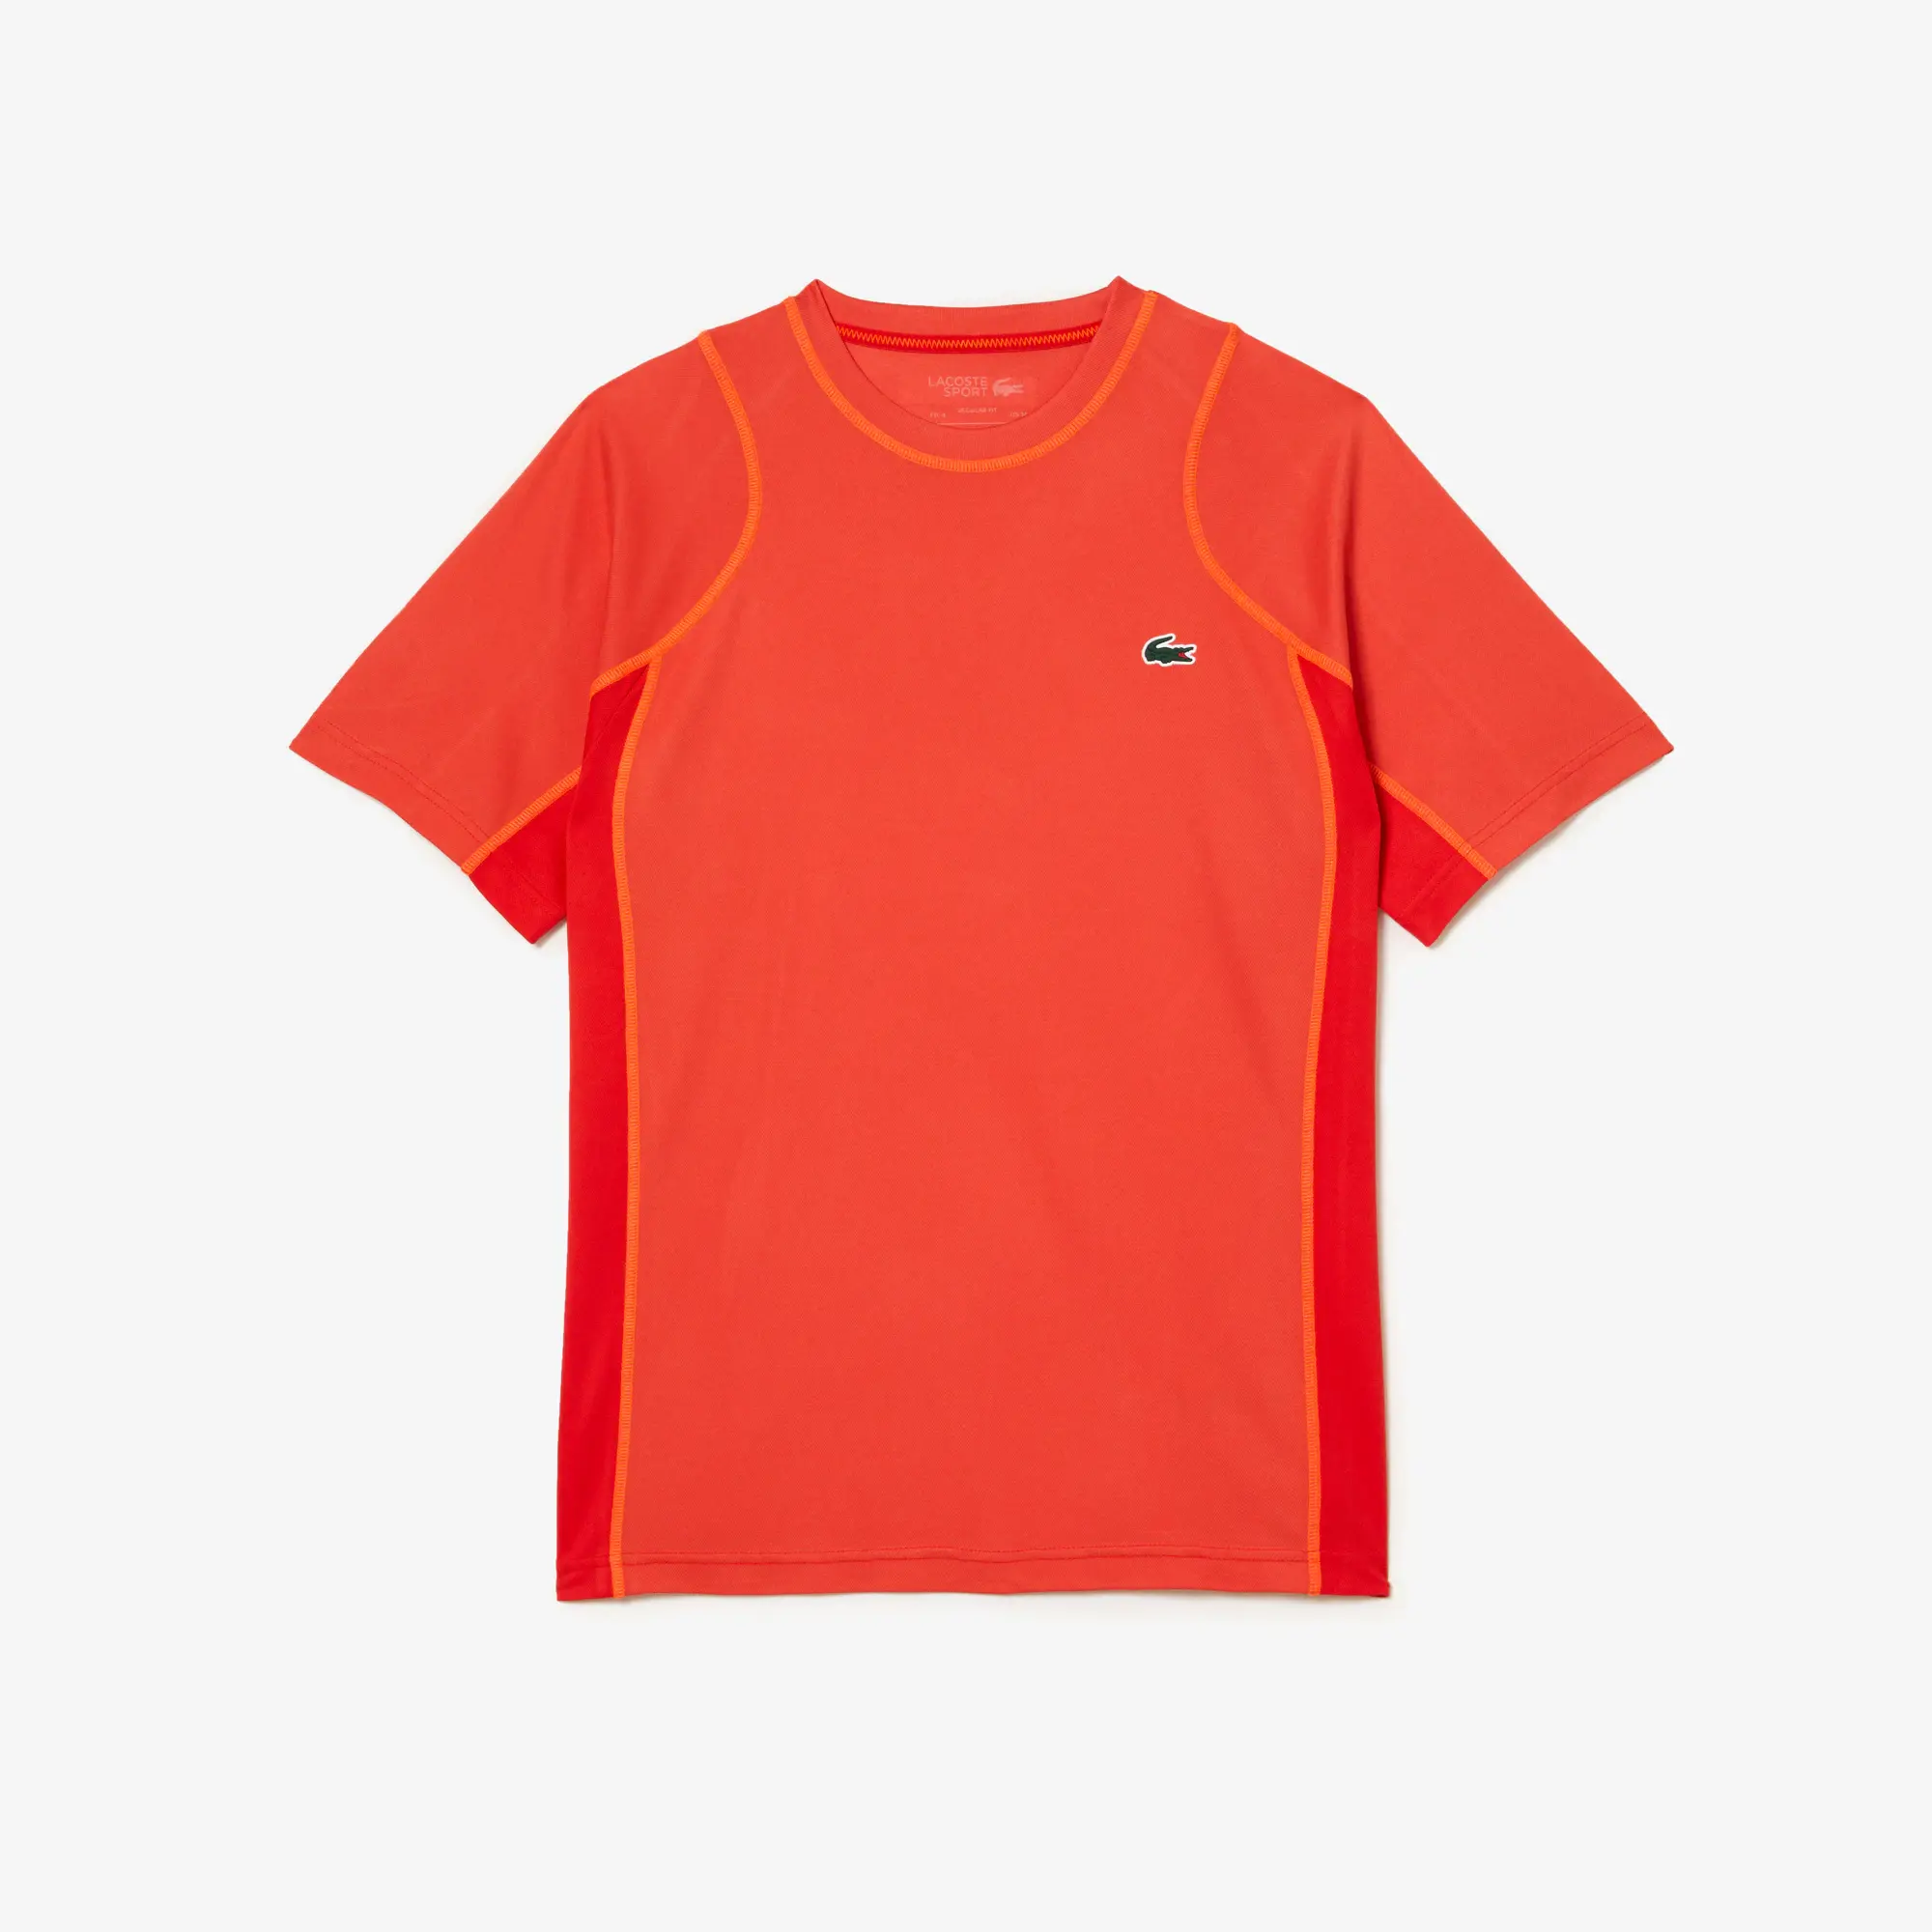 Lacoste Men’s Abrasion-Resistant Tennis T-Shirt. 2